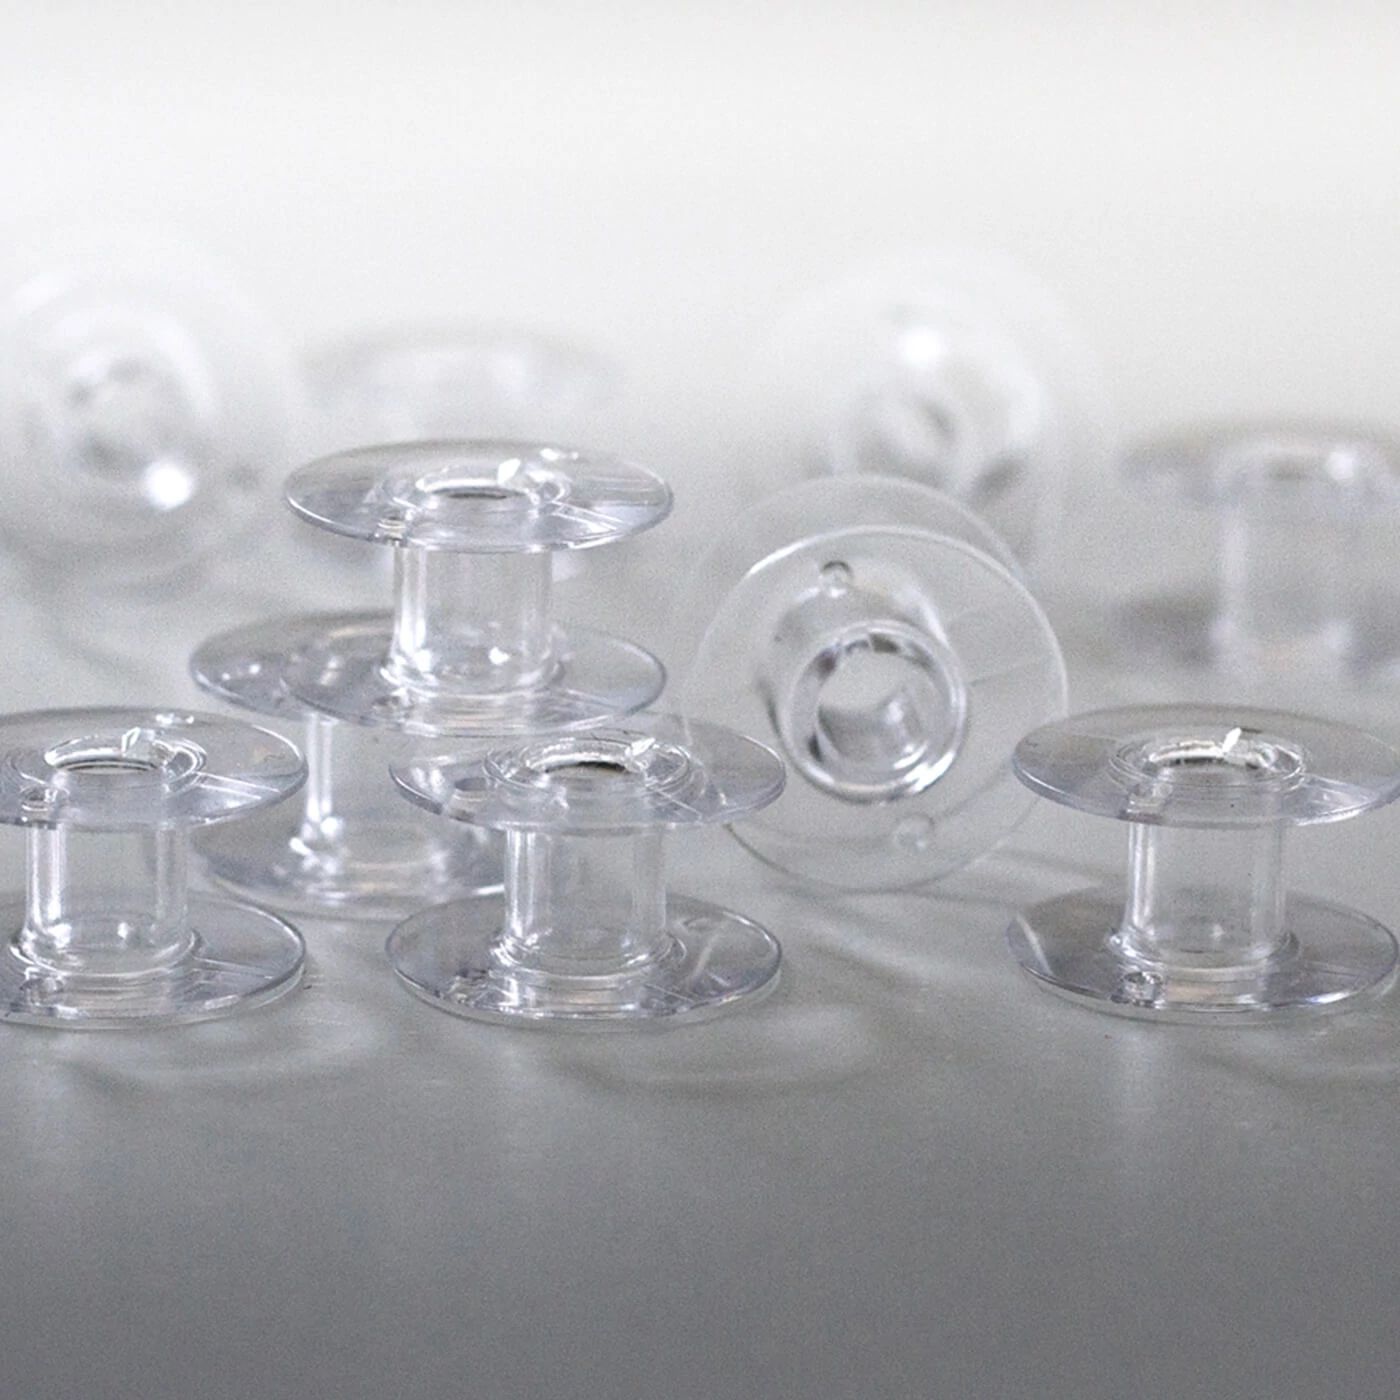 10 Plastic Bobbins for Pfaff Home Sewing Machines #9033p 